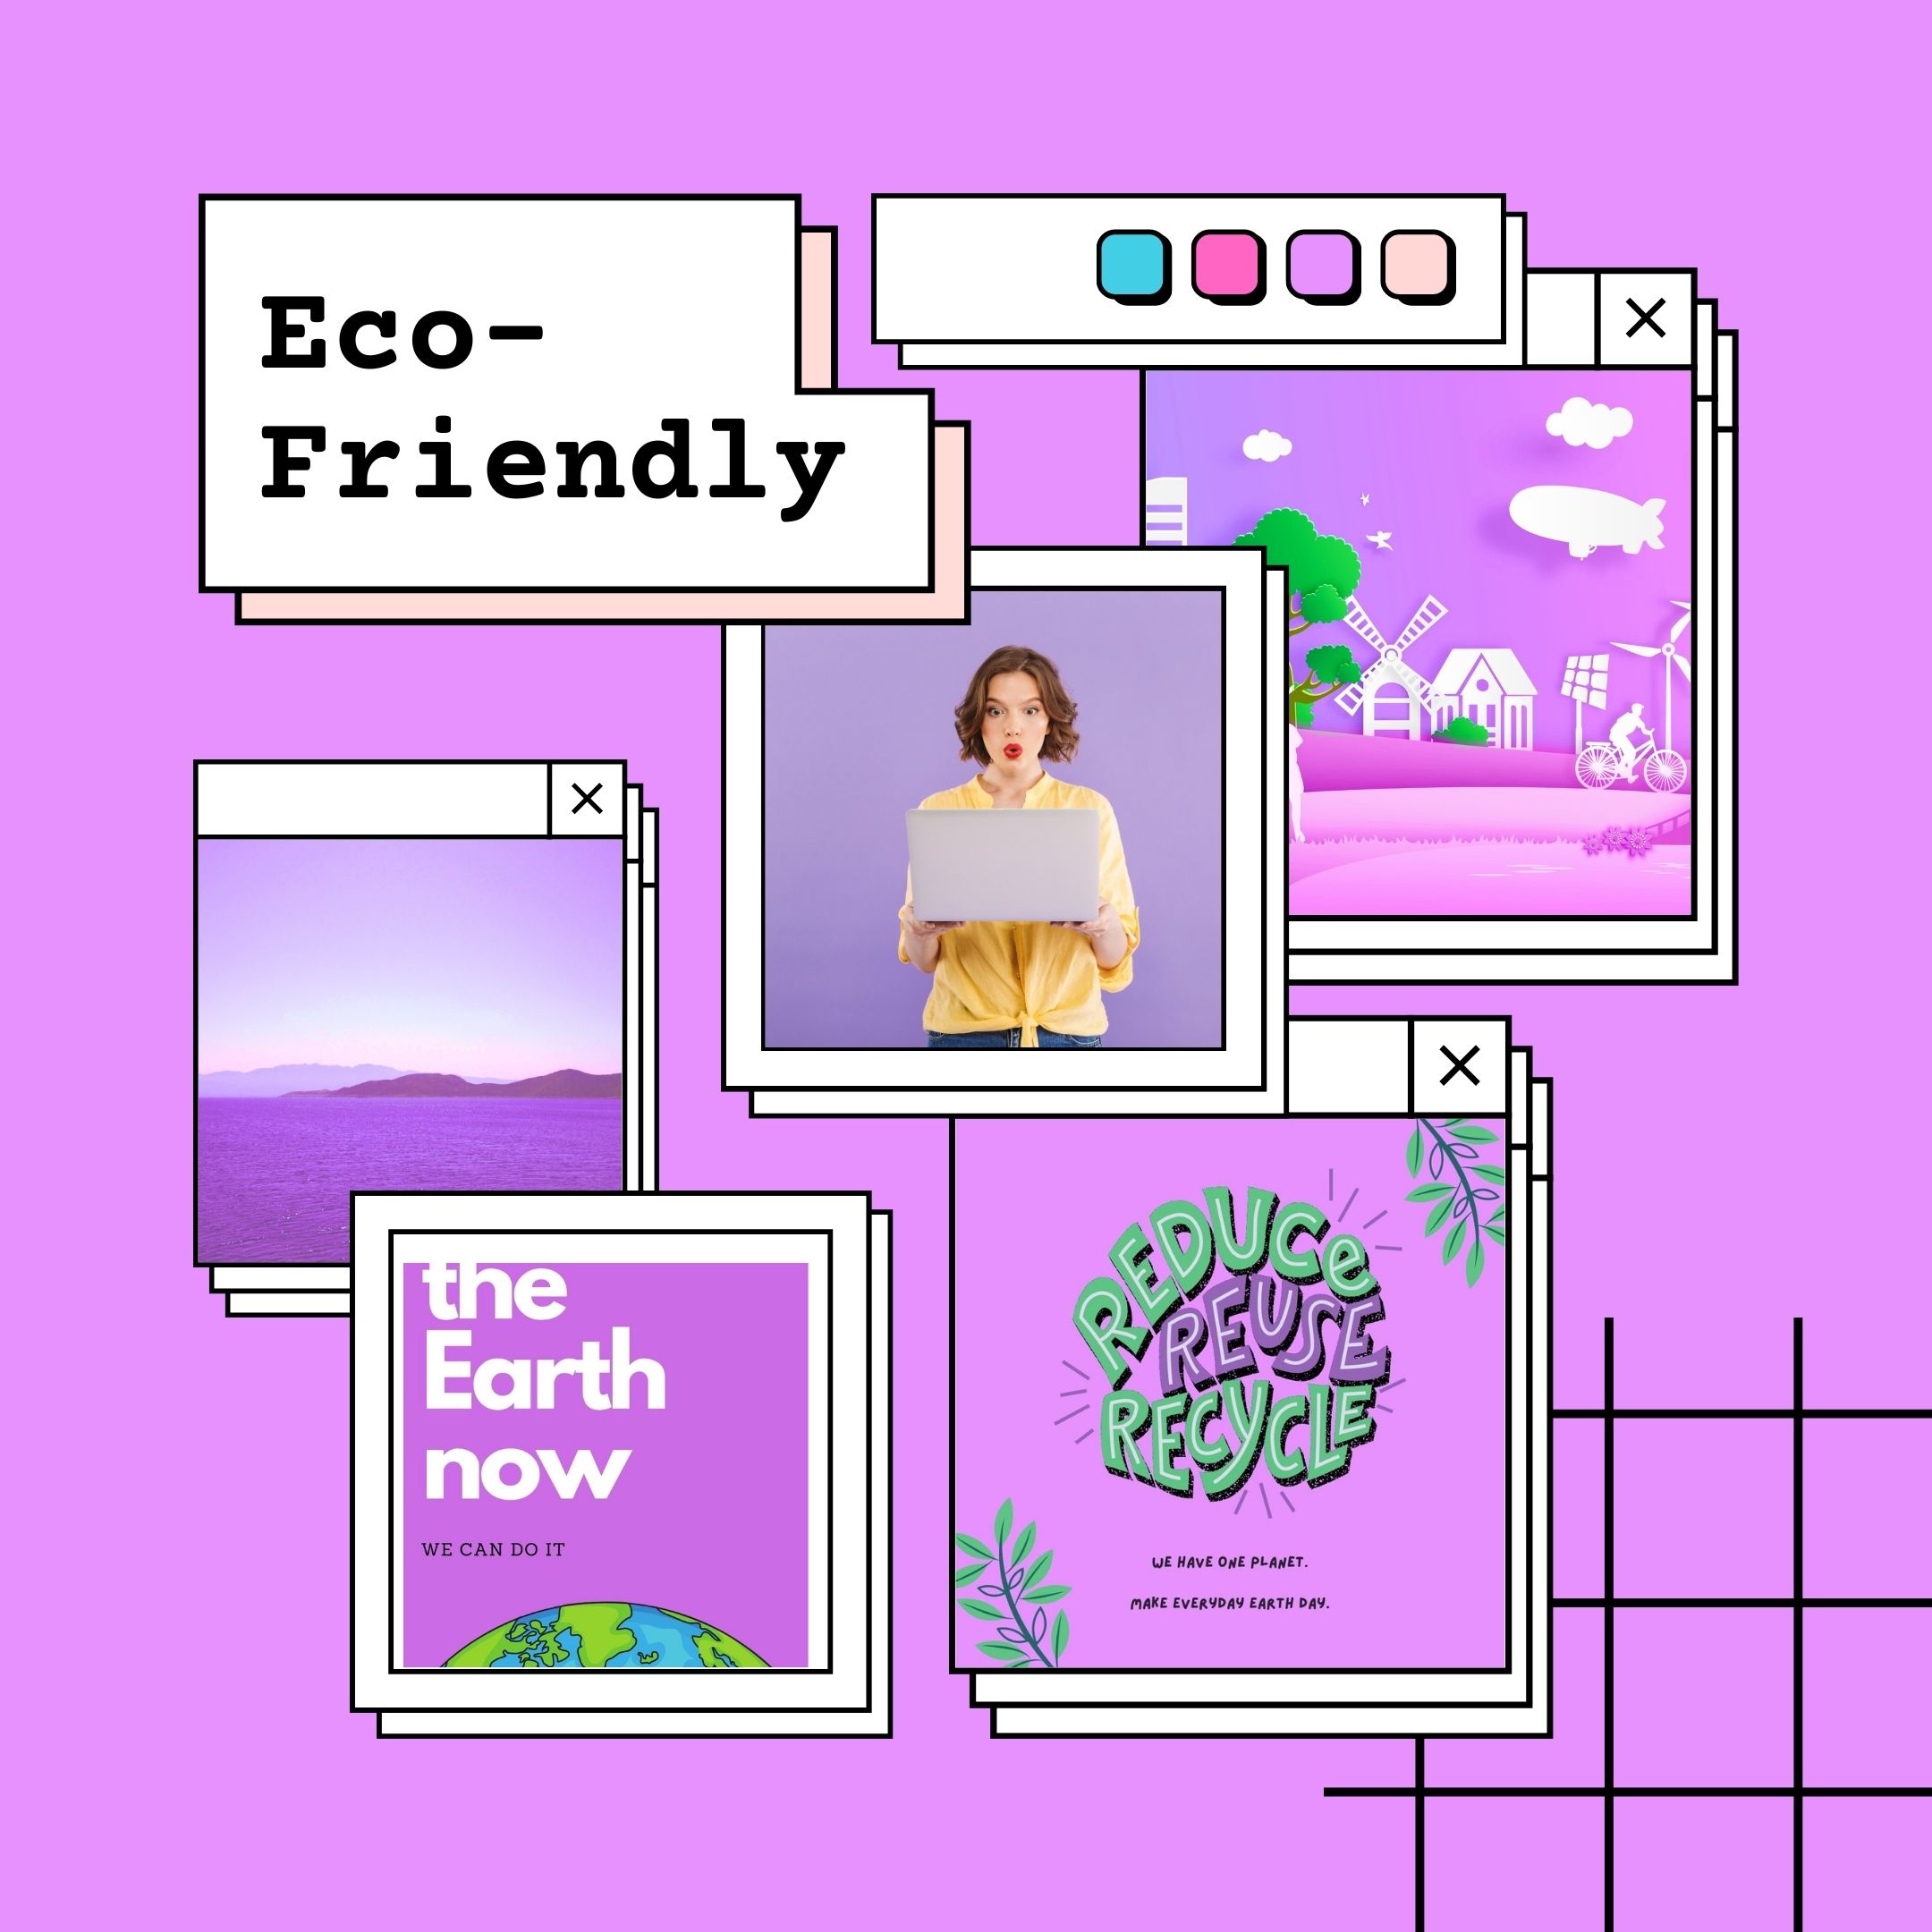 <img src="purple.jpg" alt="purple eco-friendly mood board"/> 